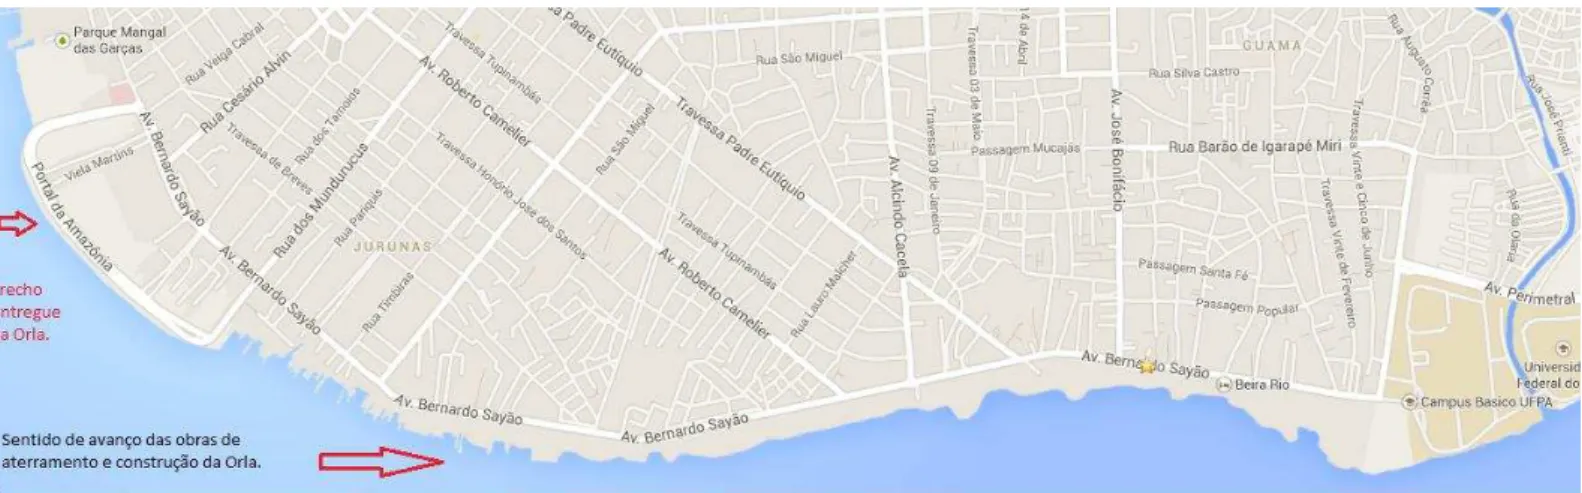 Figura  11:  Croqui  do  sentido  das  obras  da  Orla  de  Belém.  (fonte:  Google  maps,  adaptado  pelo  autor)